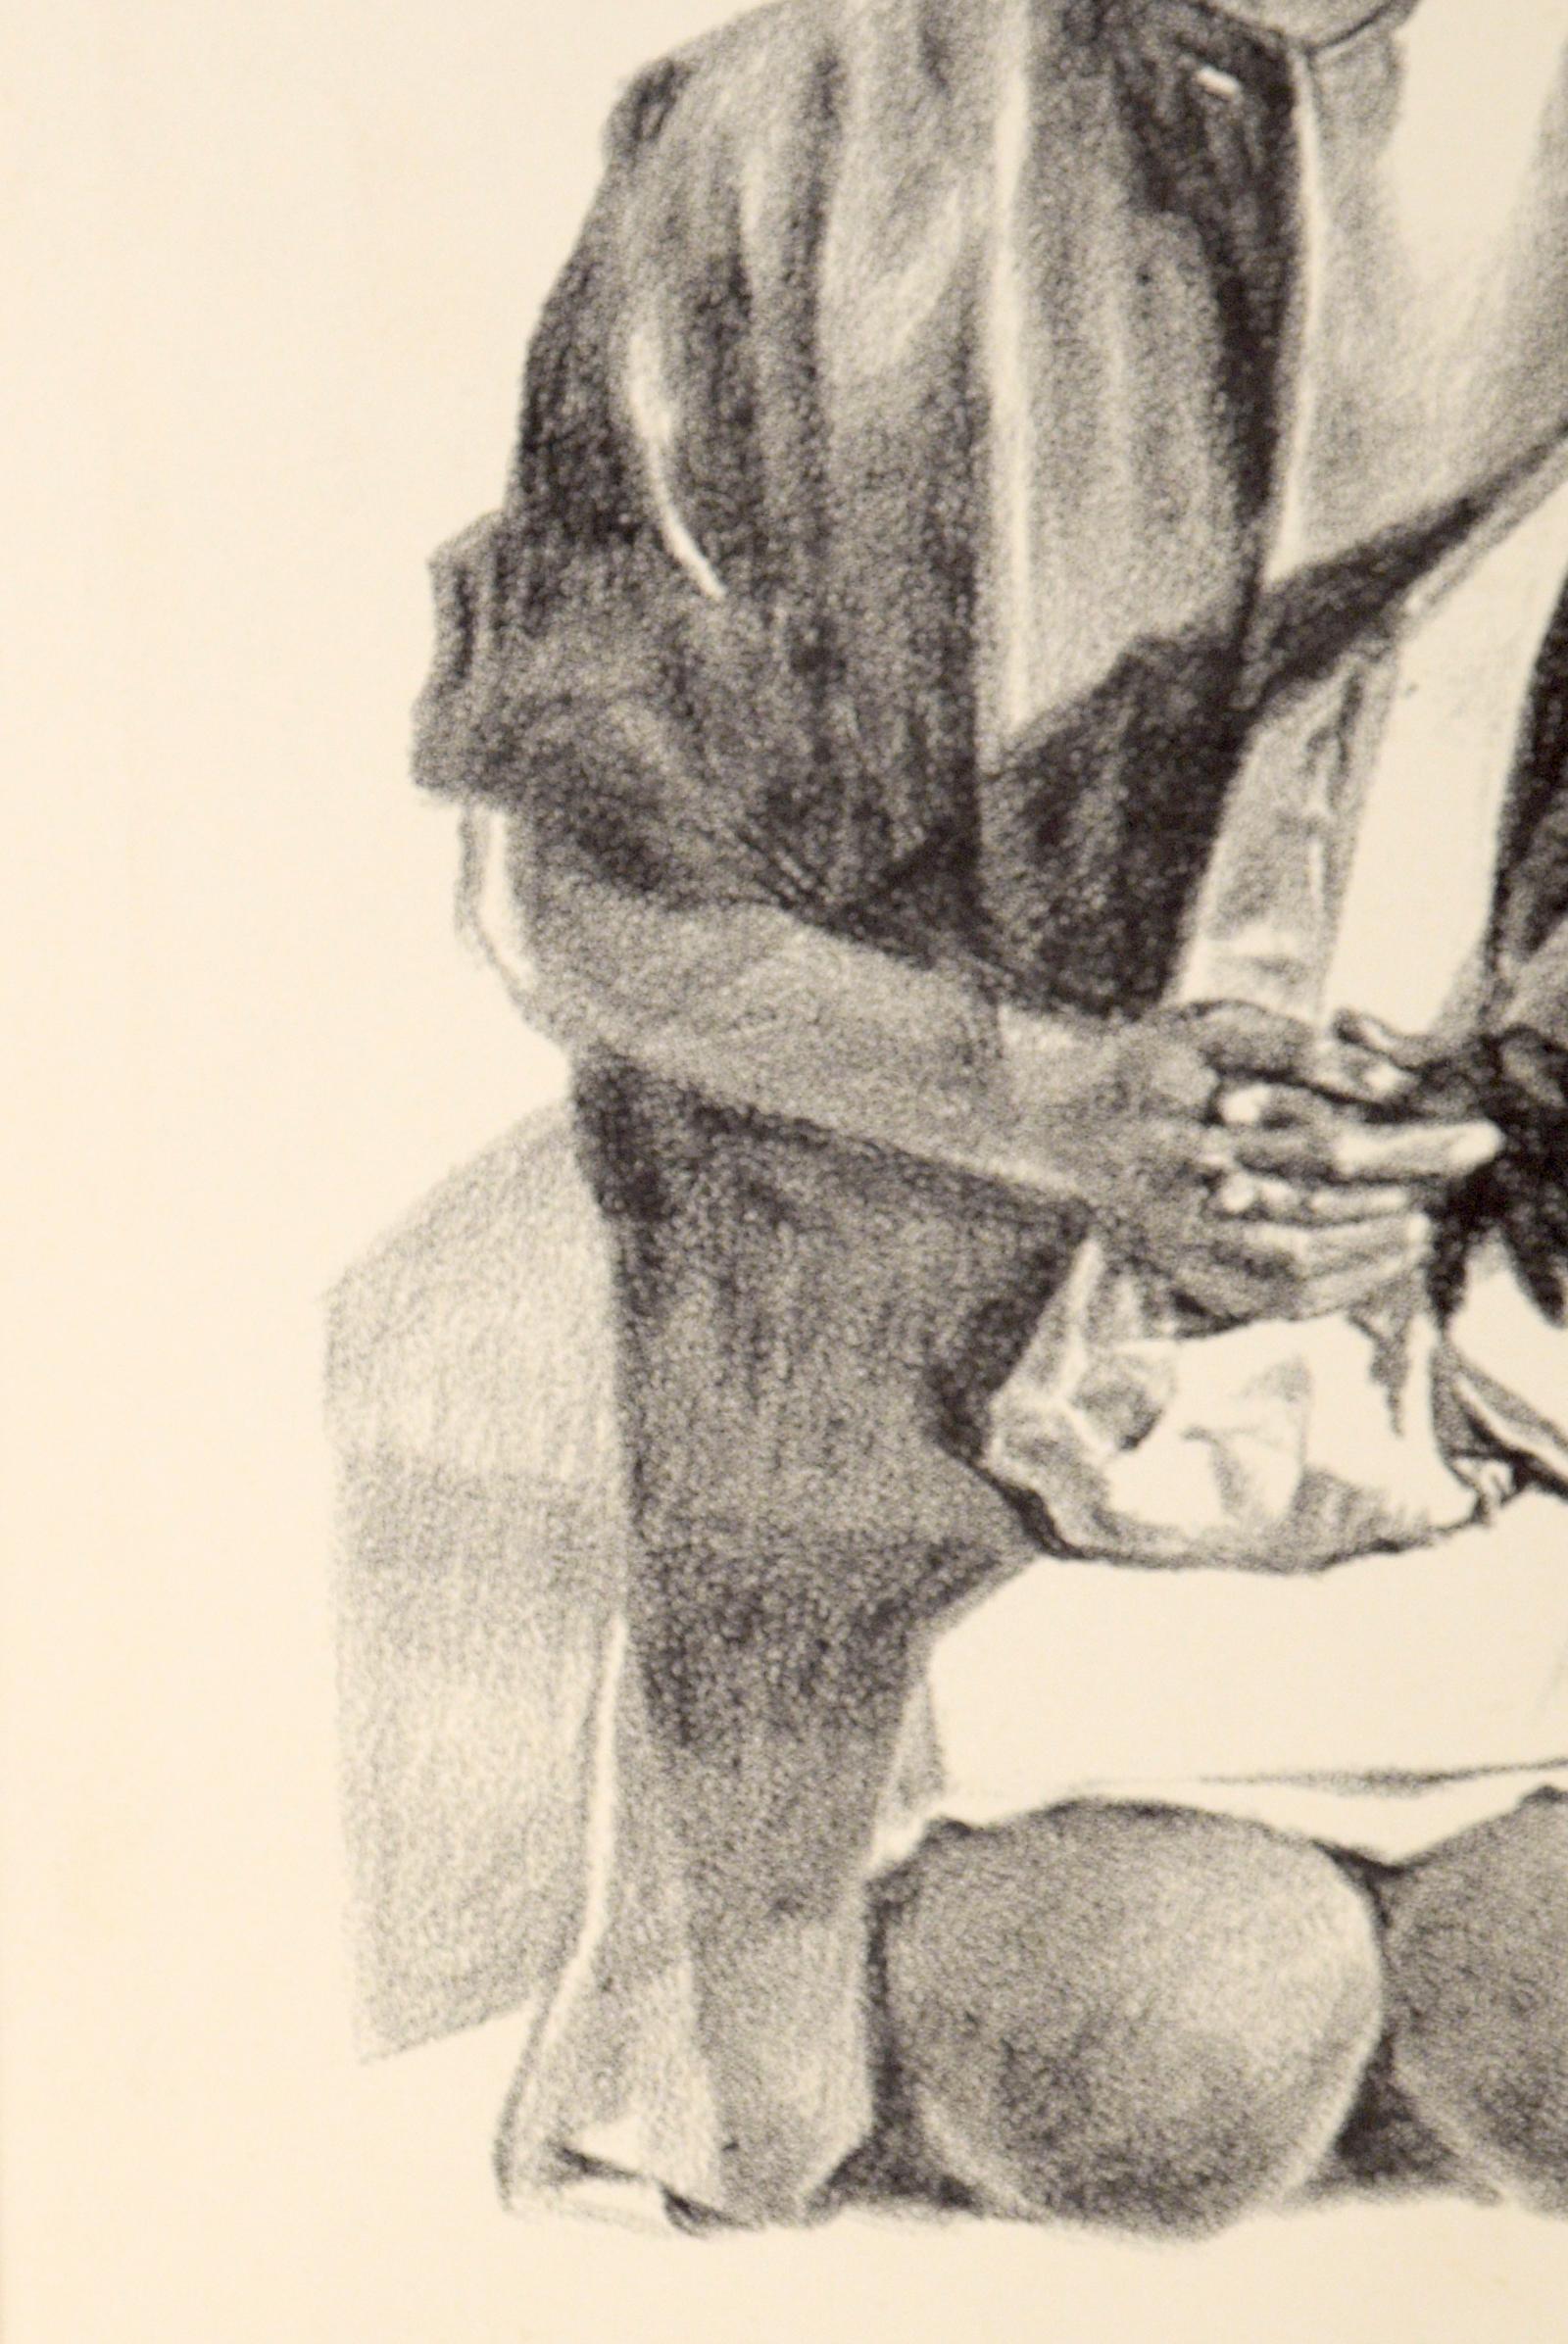 „Birmingham School Girl“ – seltene signierte figurative Lithographie in Tinte auf Papier

Kräftige Lithografie von Eugene Hawkins (Amerikaner, geb. 1933). Das halb abstrahierte Bild zeigt ein junges, schwarzes Schulmädchen, das verzweifelt und